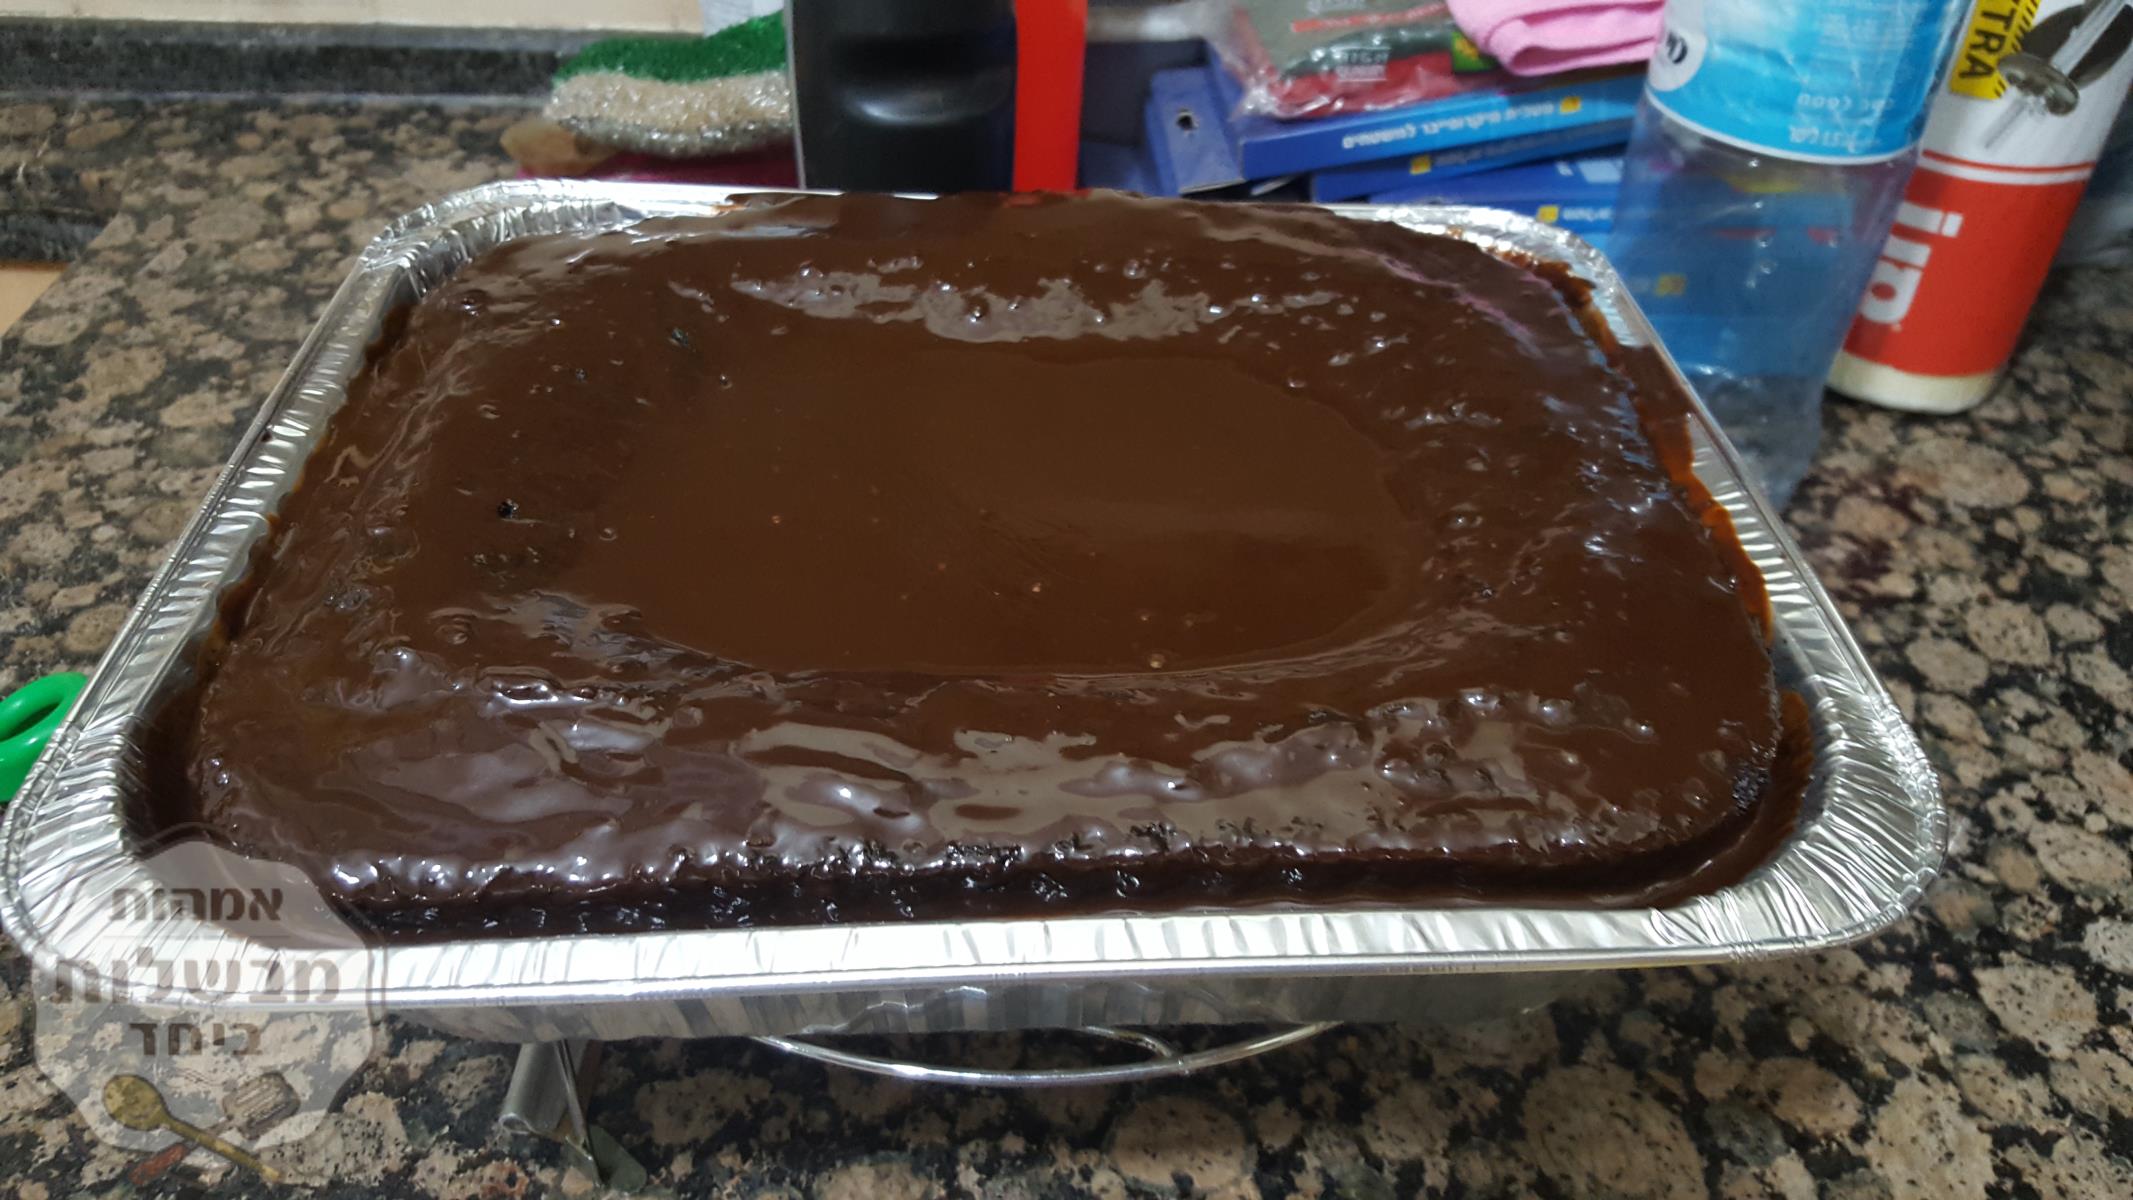 עוגת שוקולד פרווה